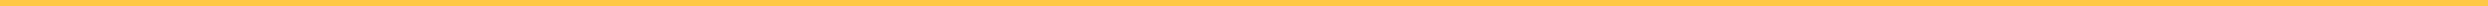 instant-university_yellow-border